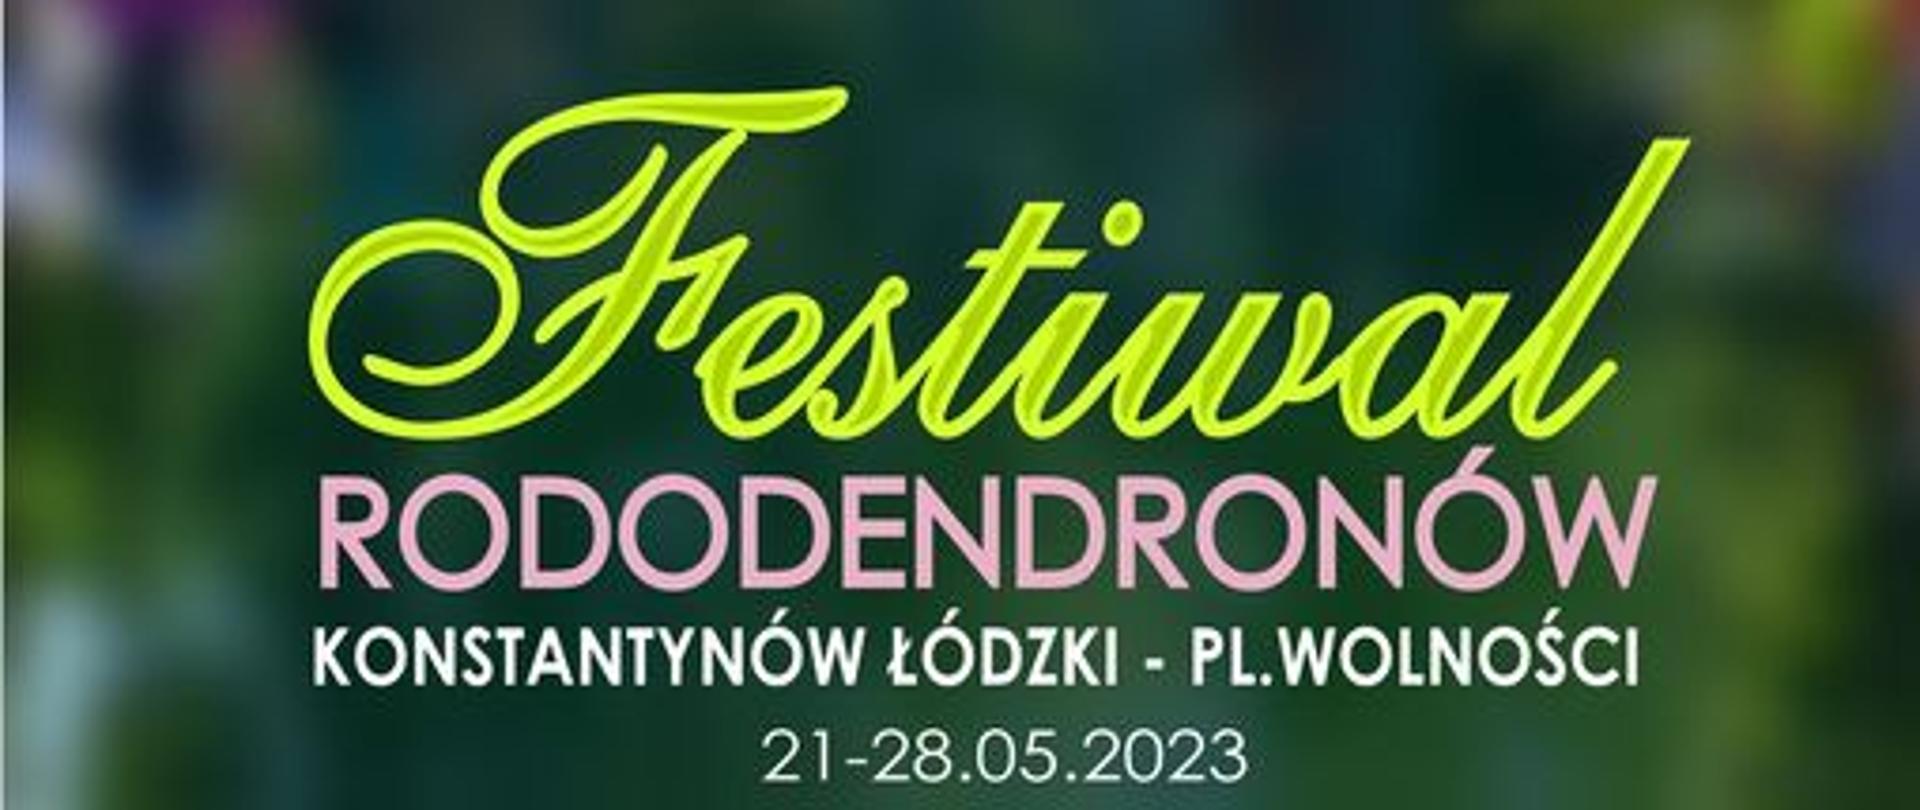 Plakat na Festiwal Rododendronów.
Konstantynów Łódzki - 21/28.05.2023
21.05 godz 15-20